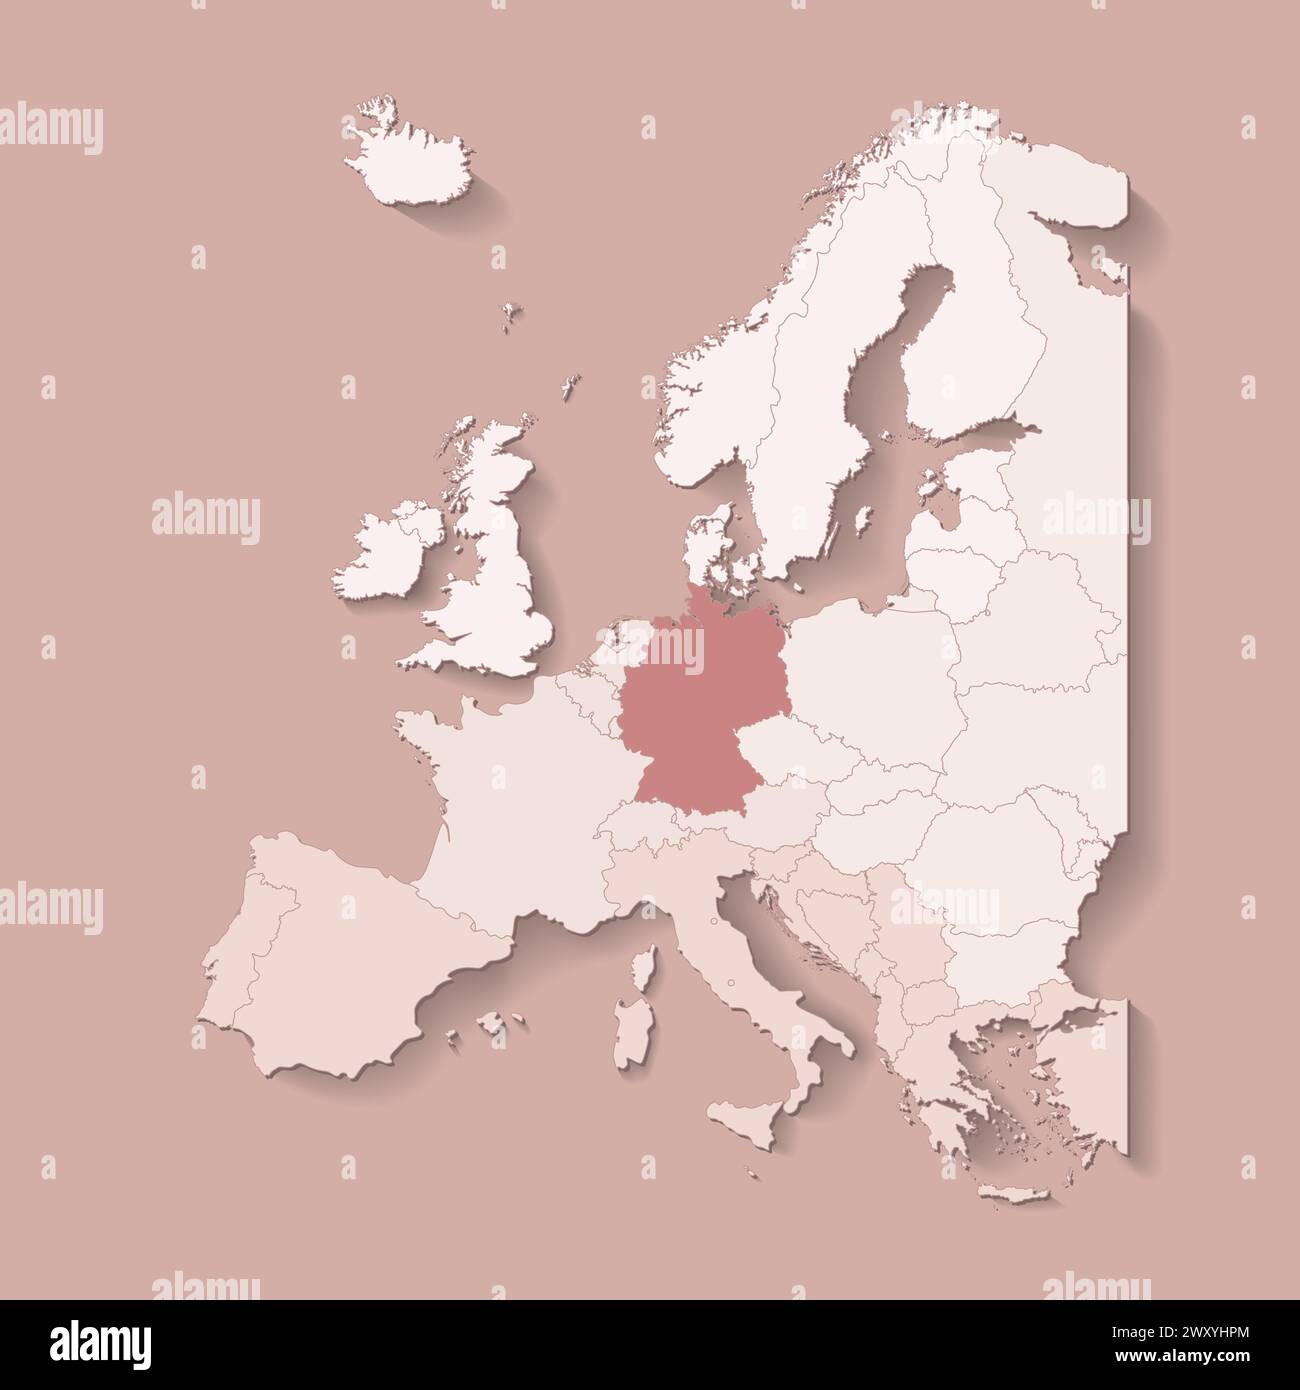 Vektorillustration mit europäischem Land mit landesgrenzen und markiertem Land Deutschland. Politische Karte in braunen Farben mit West-, Süd- und etc.-Re Stock Vektor